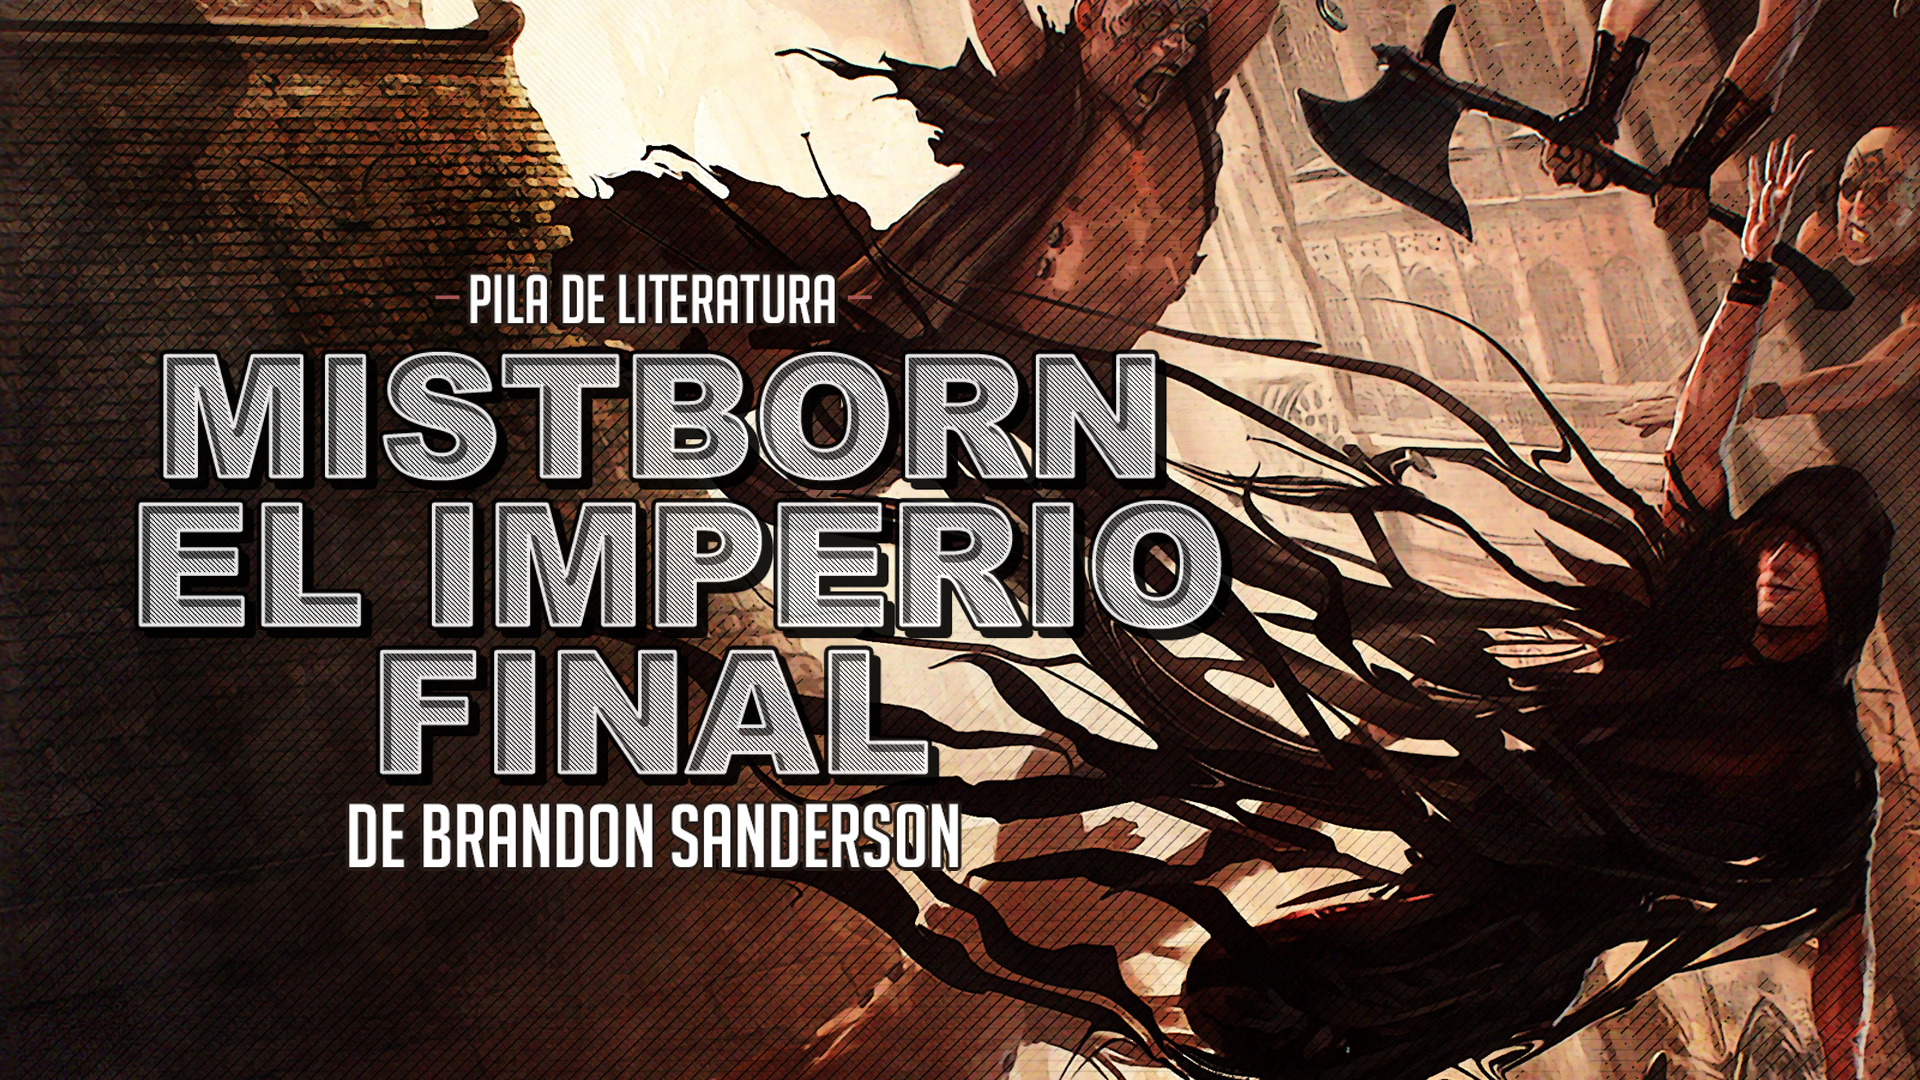 Pila de Literatura – Mistborn: El imperio final de Brandon Sanderson – Invitado Especial Eric Portnoy